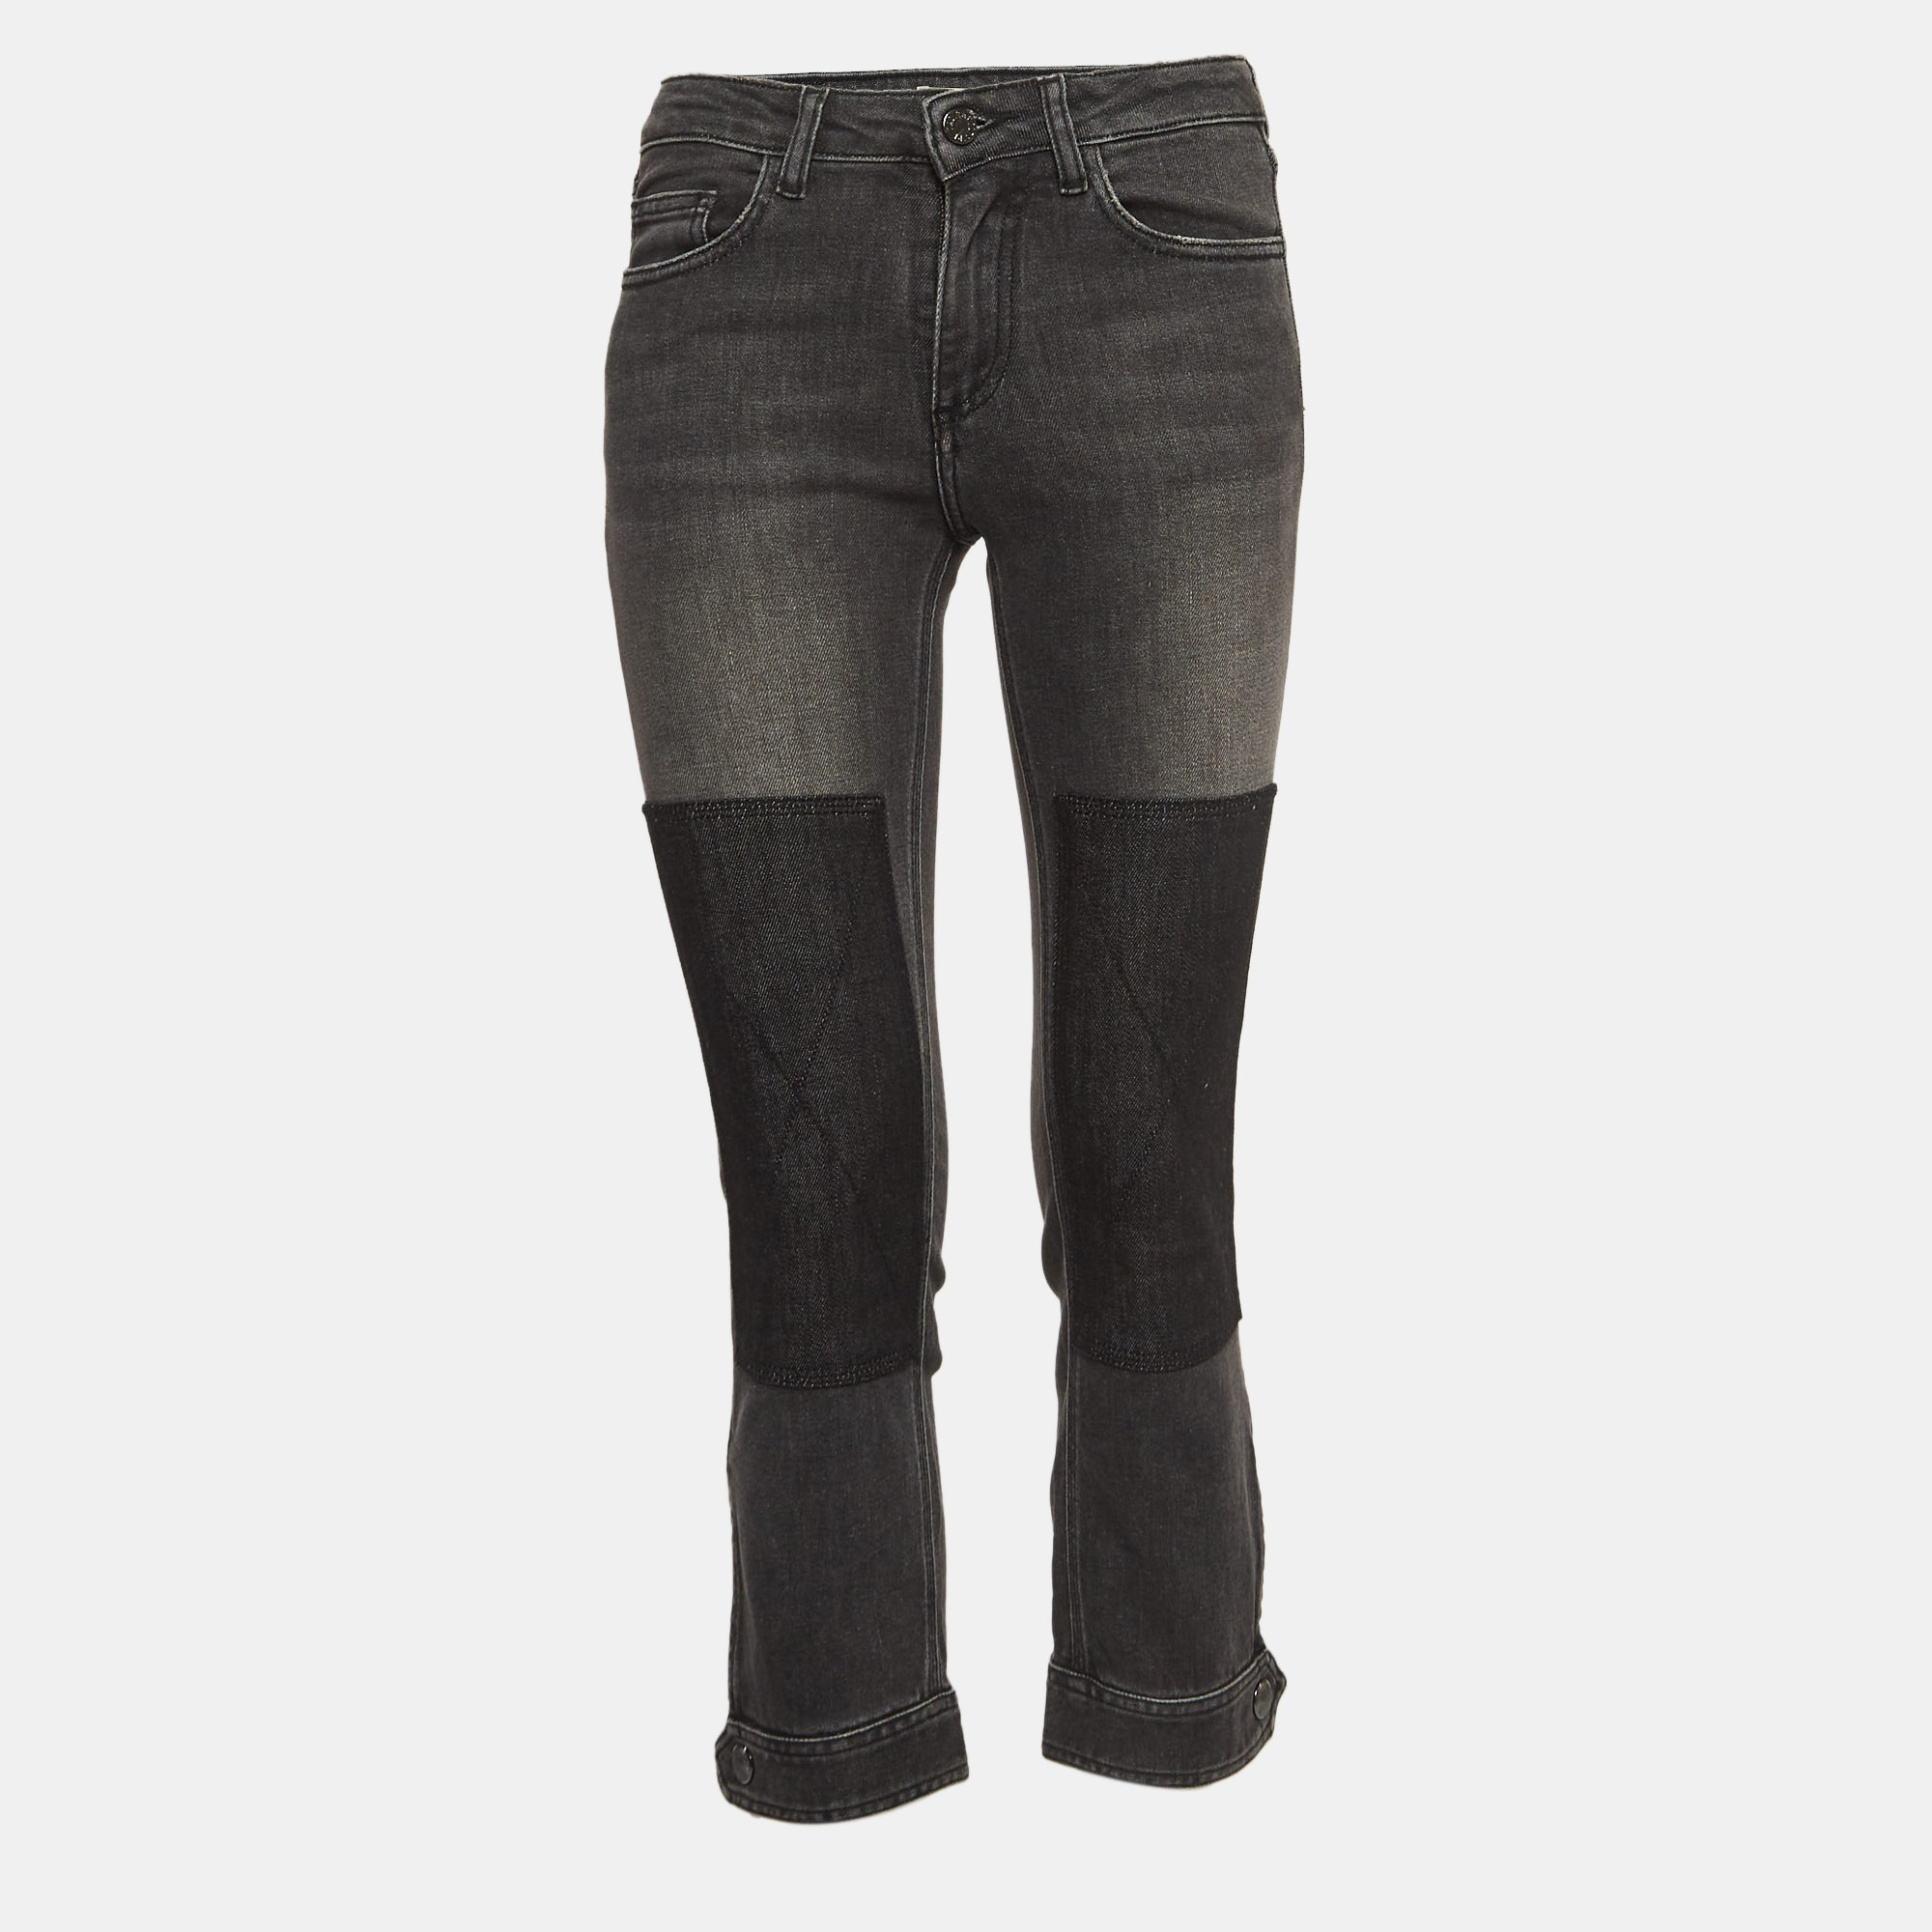 

Zadig & Voltaire Grey Denim Patch Work Jeans S Waist 25"